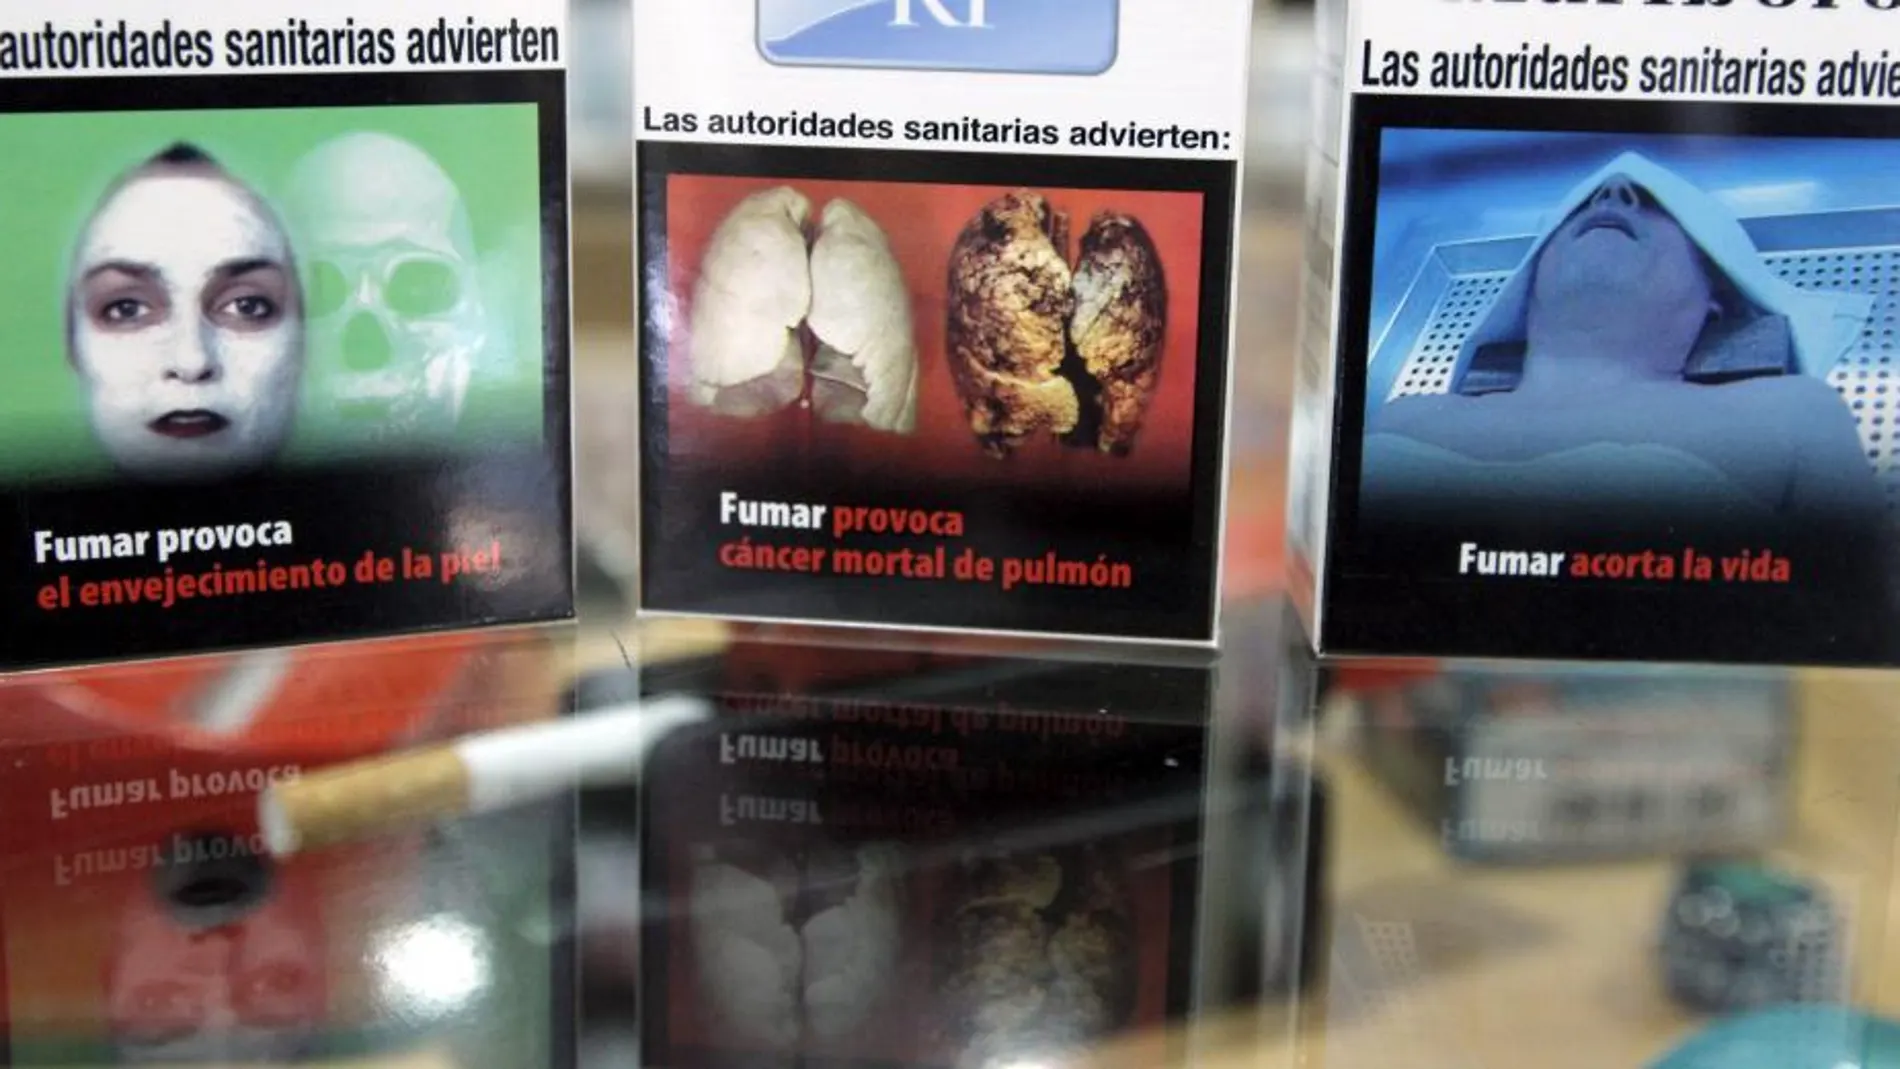 Paquetes de tabaco con imágenes duras sobre sus consecuencias en la salud